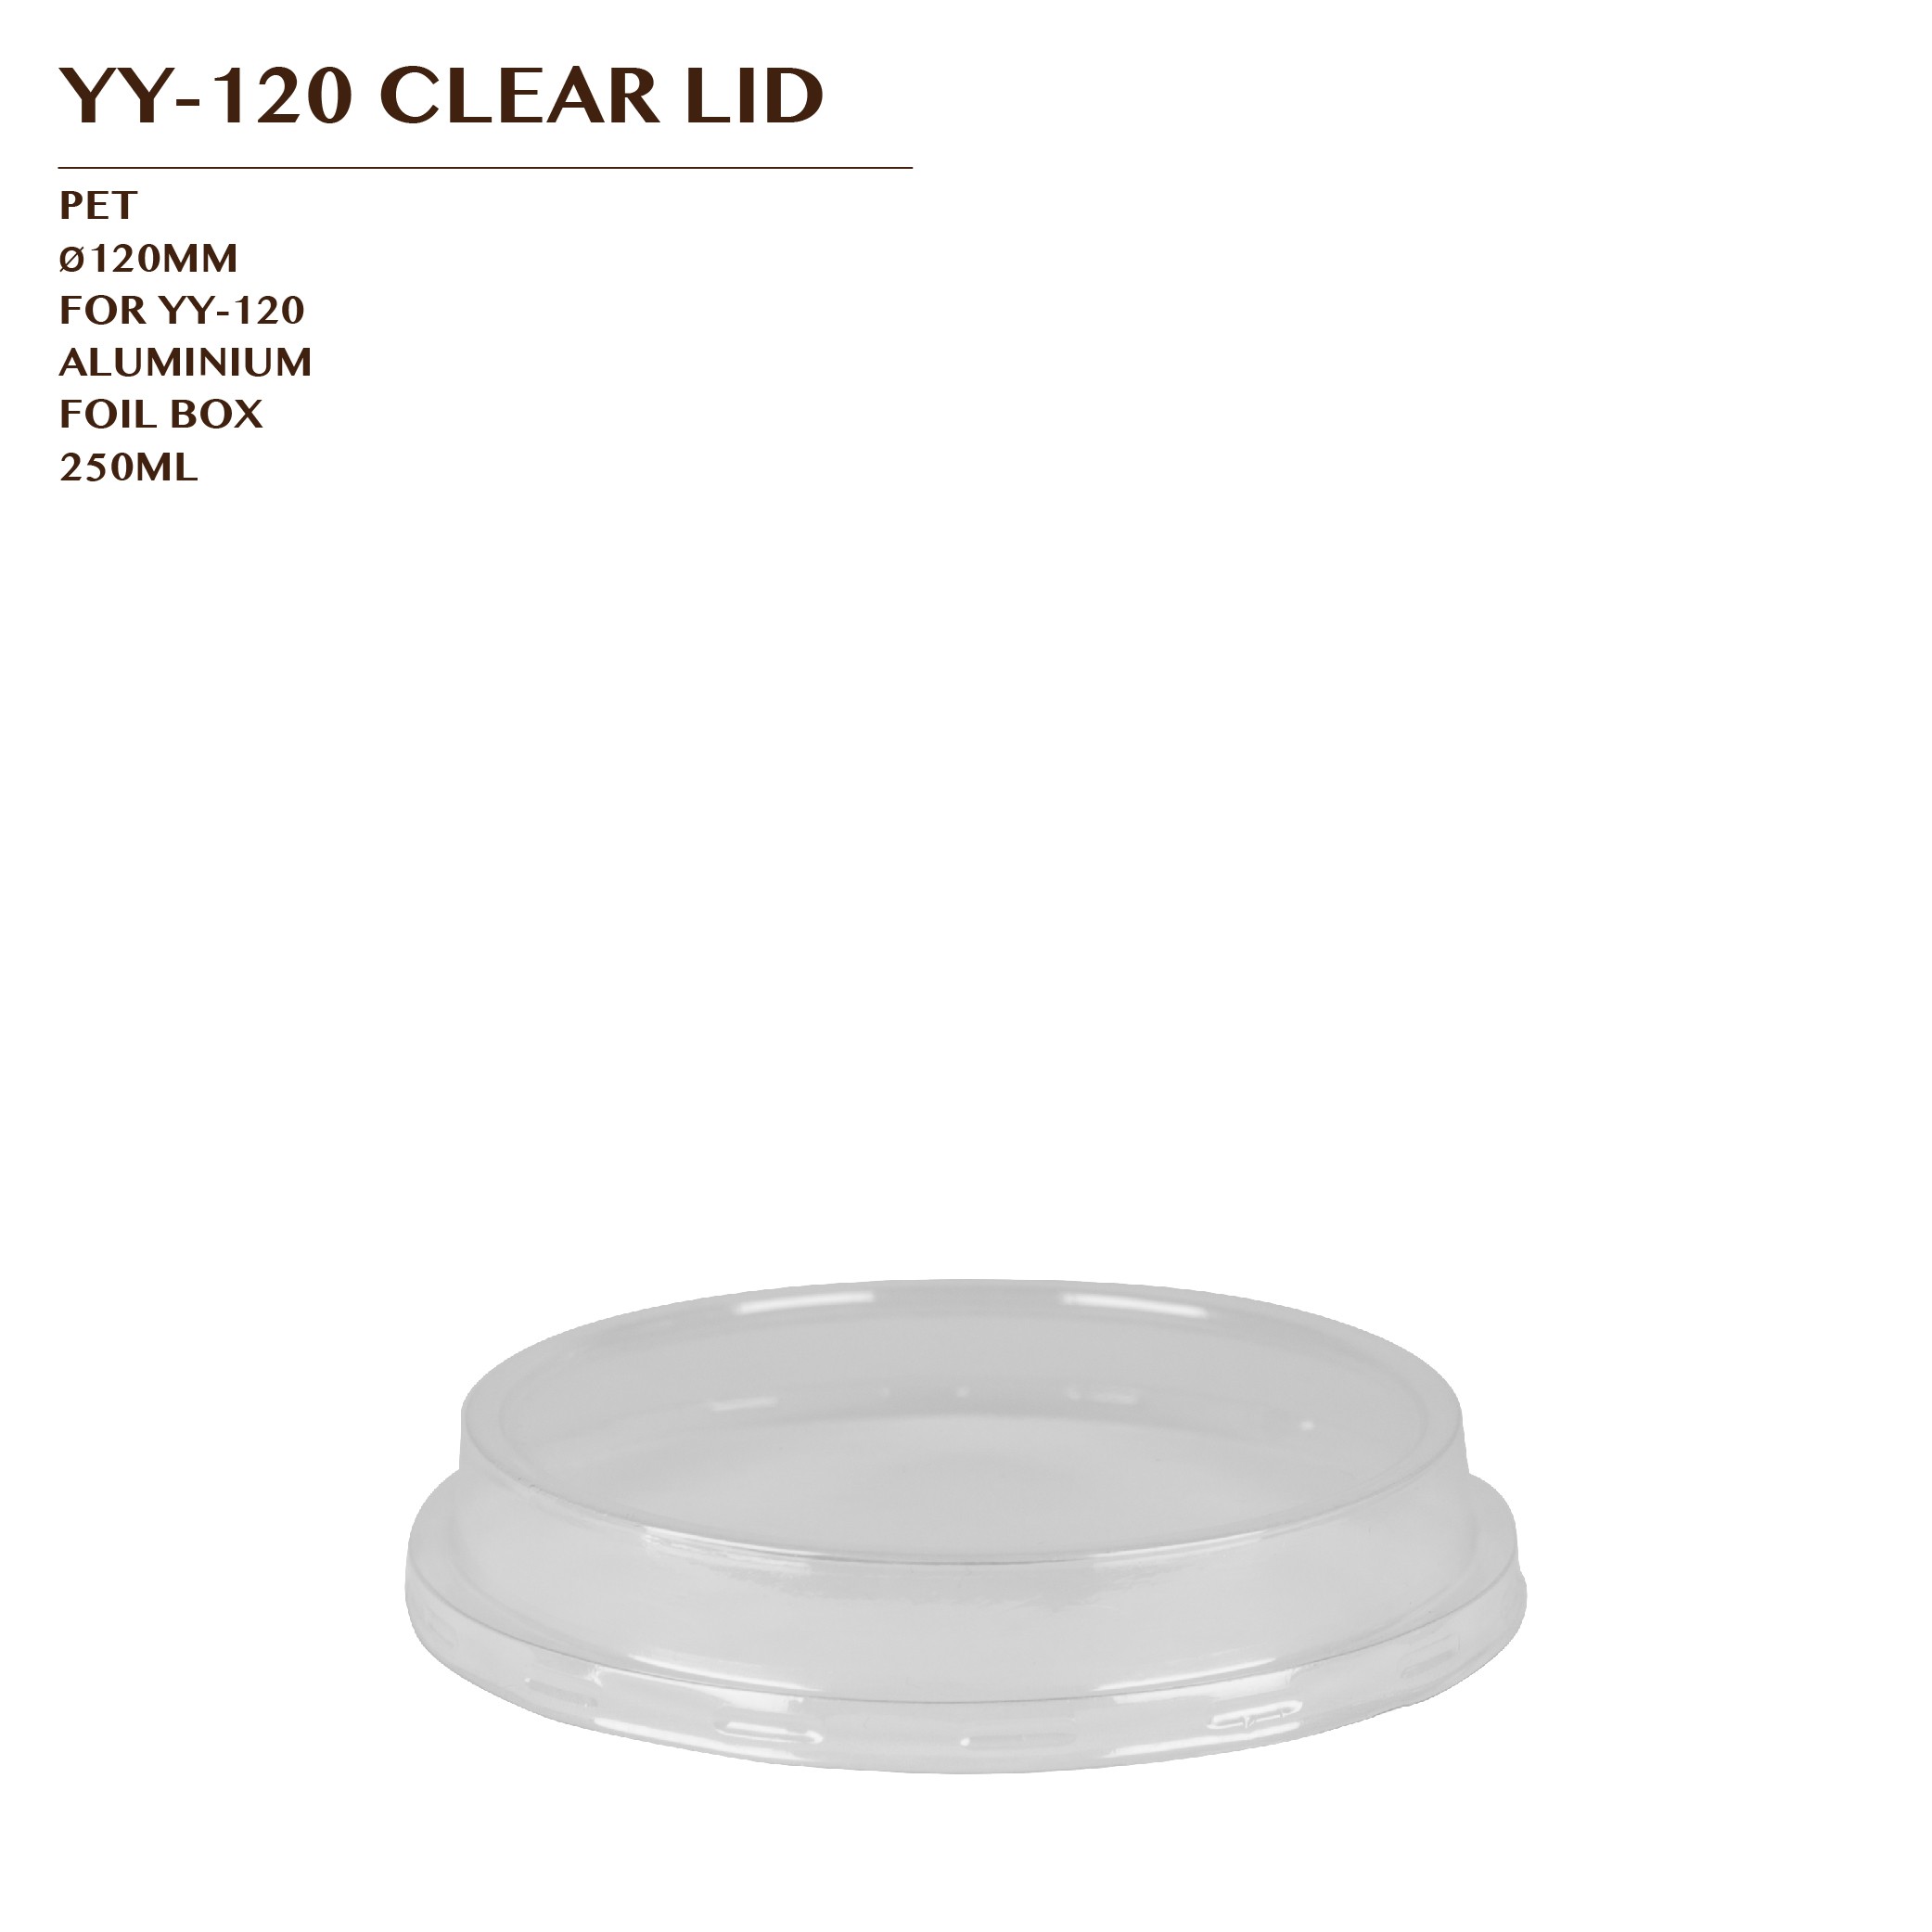 YY-120 CLEAR LID 900PCS/CTN